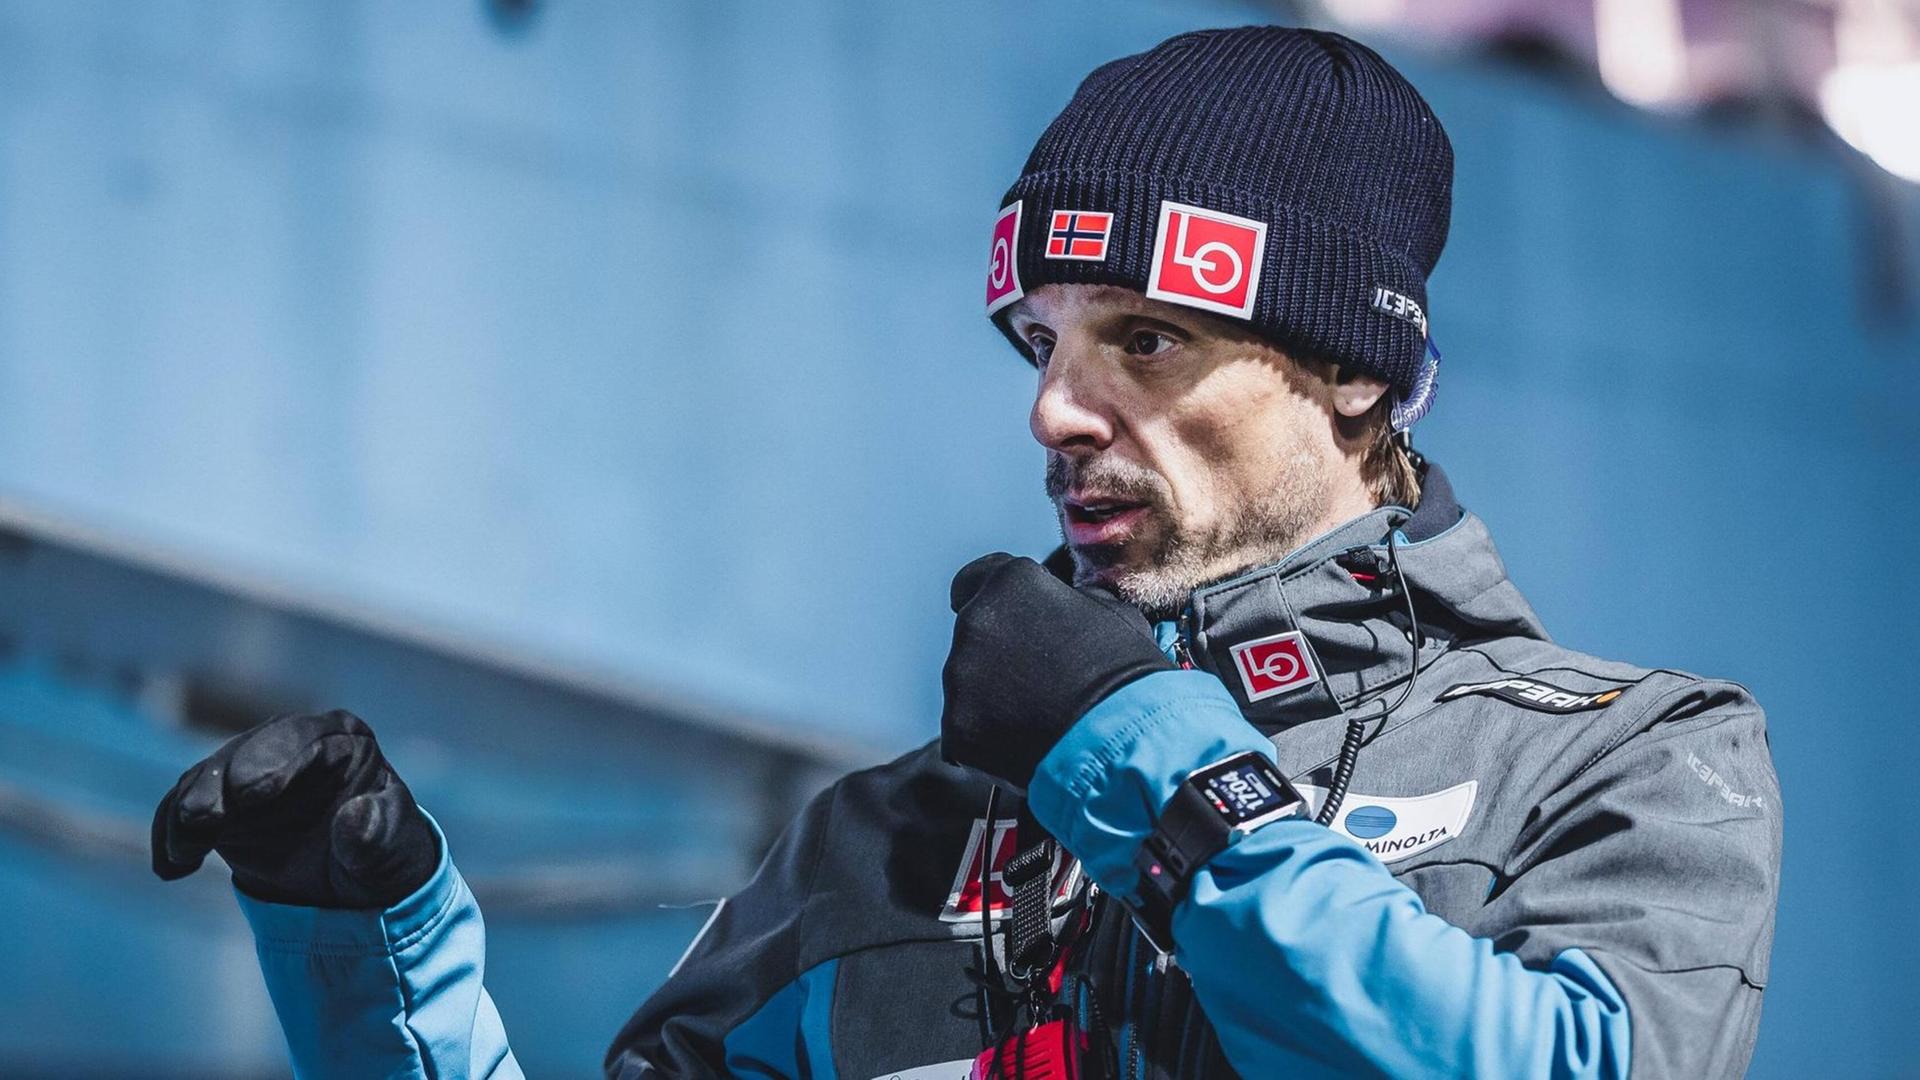 Der norwegischer Skisprung-Nationaltrainer Alexander Stöcklwar mit seinem Team der Gewinner in der Wetter-Lotterie von Wisla.